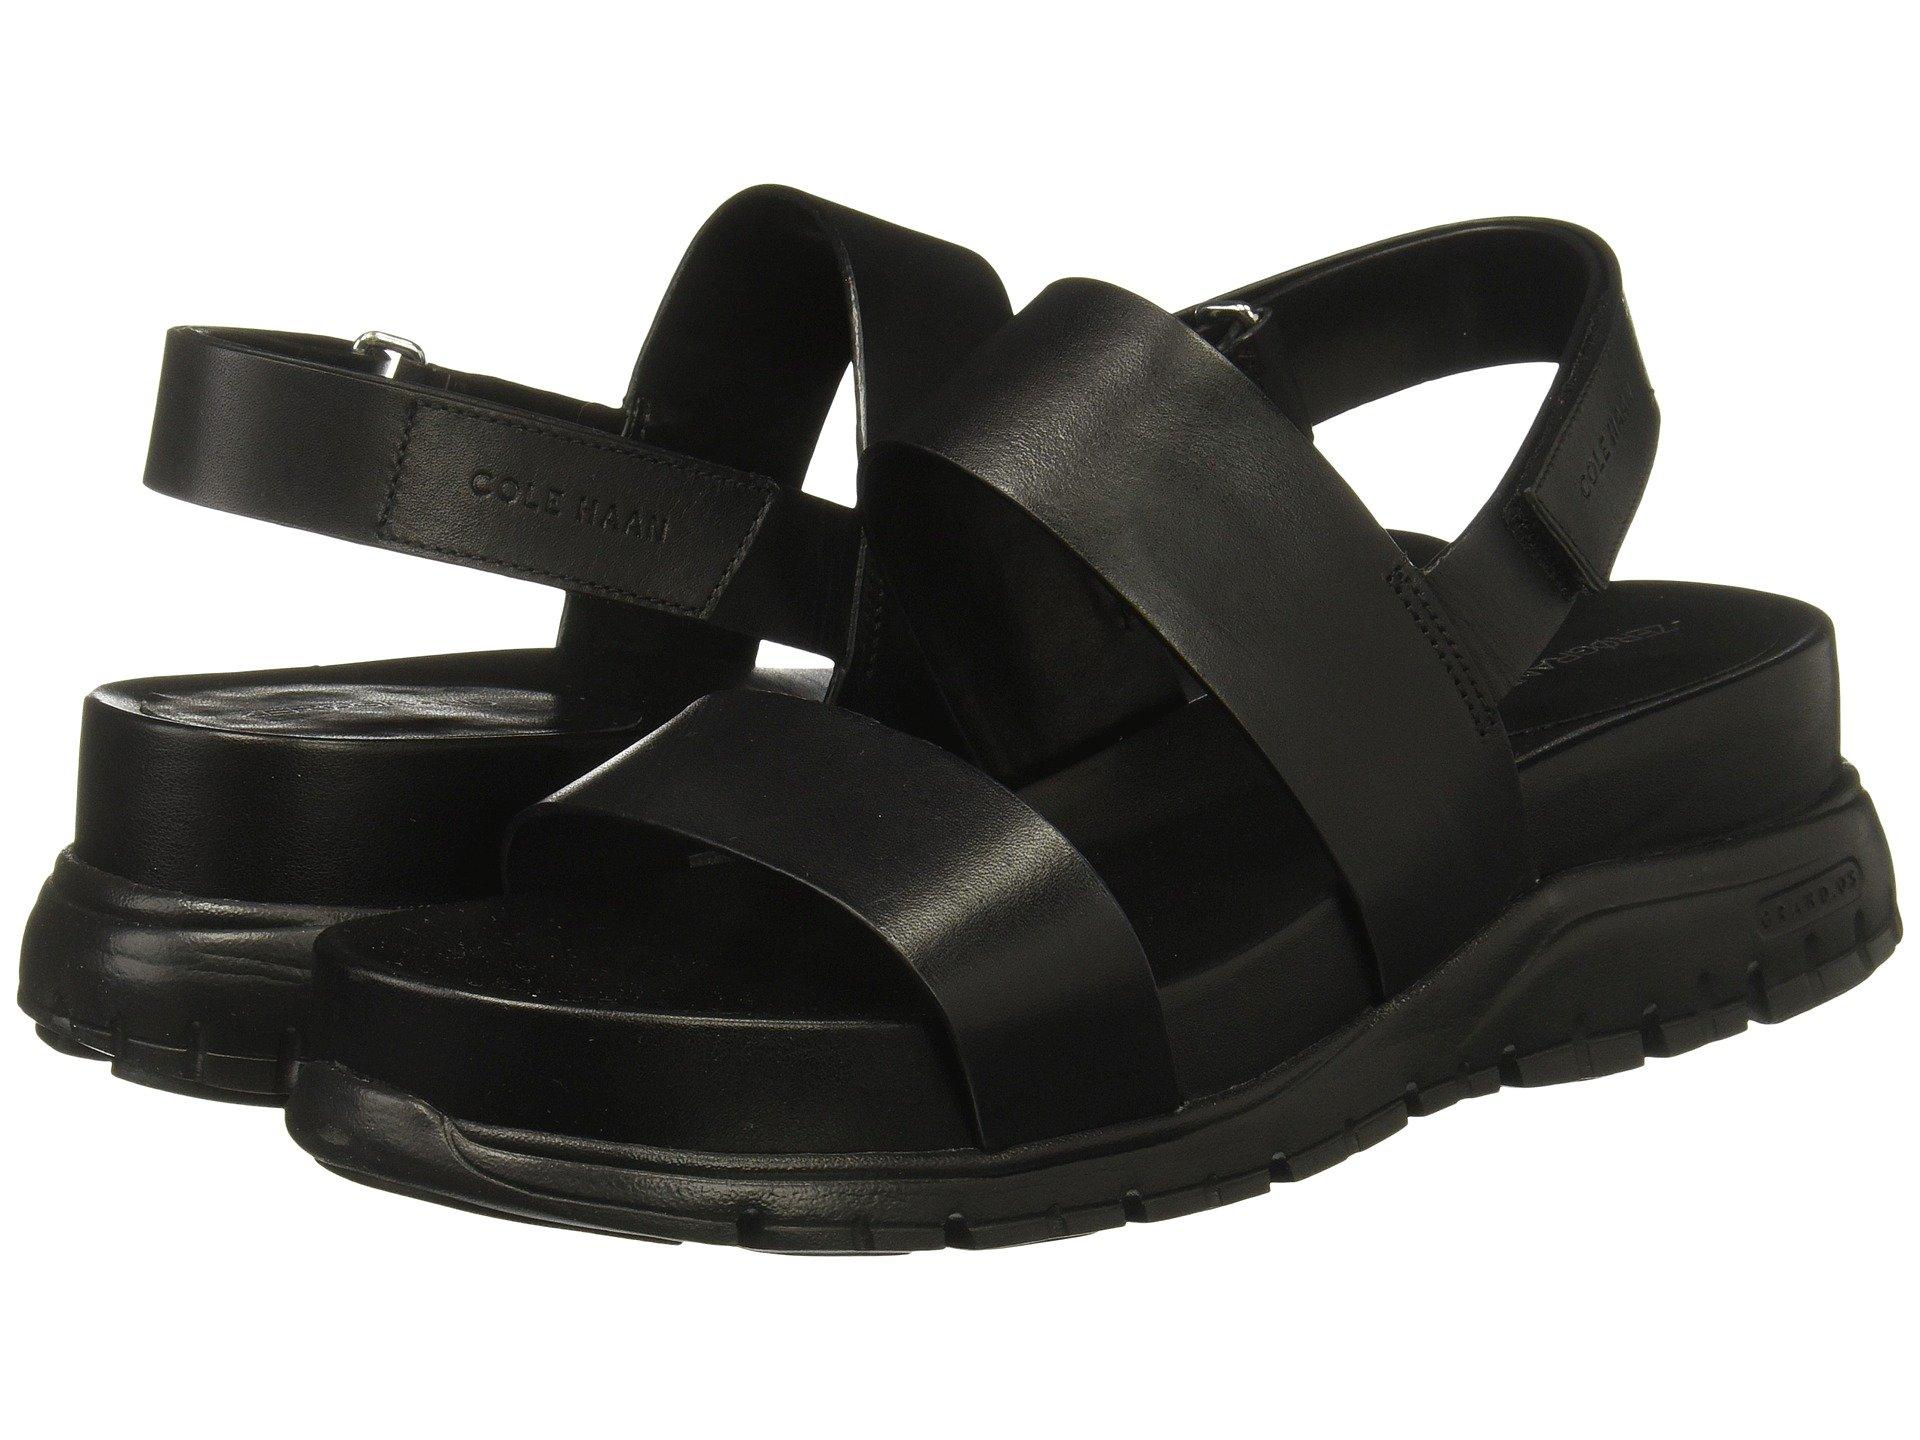 cole haan slide sandals